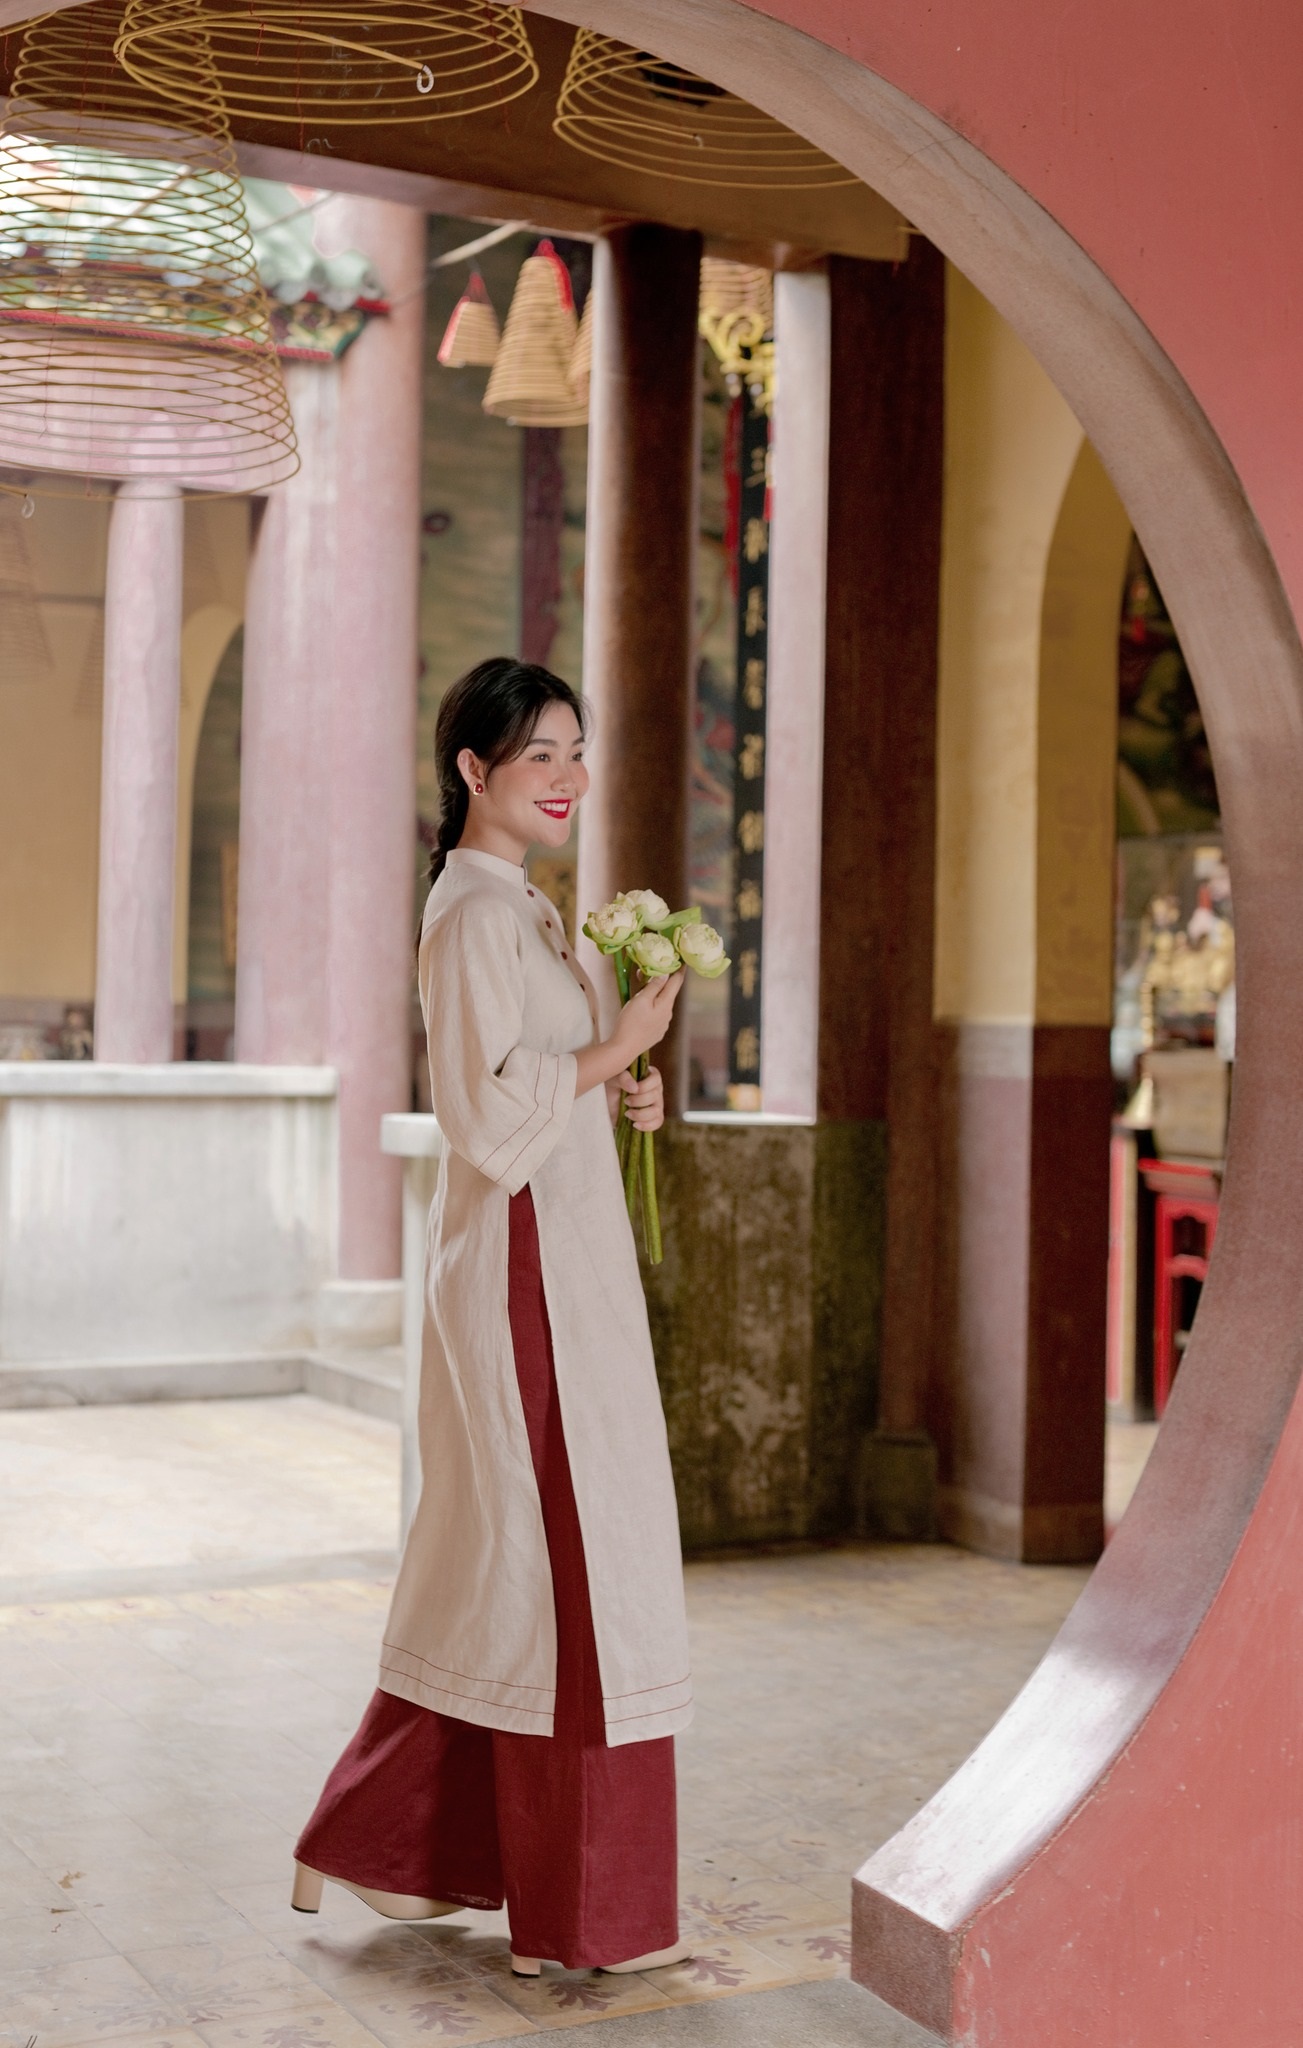 Thiết kế áo dài với màu sắc trang nhã rất phù hợp khi đi lễ chùa (Ảnh: Internet)